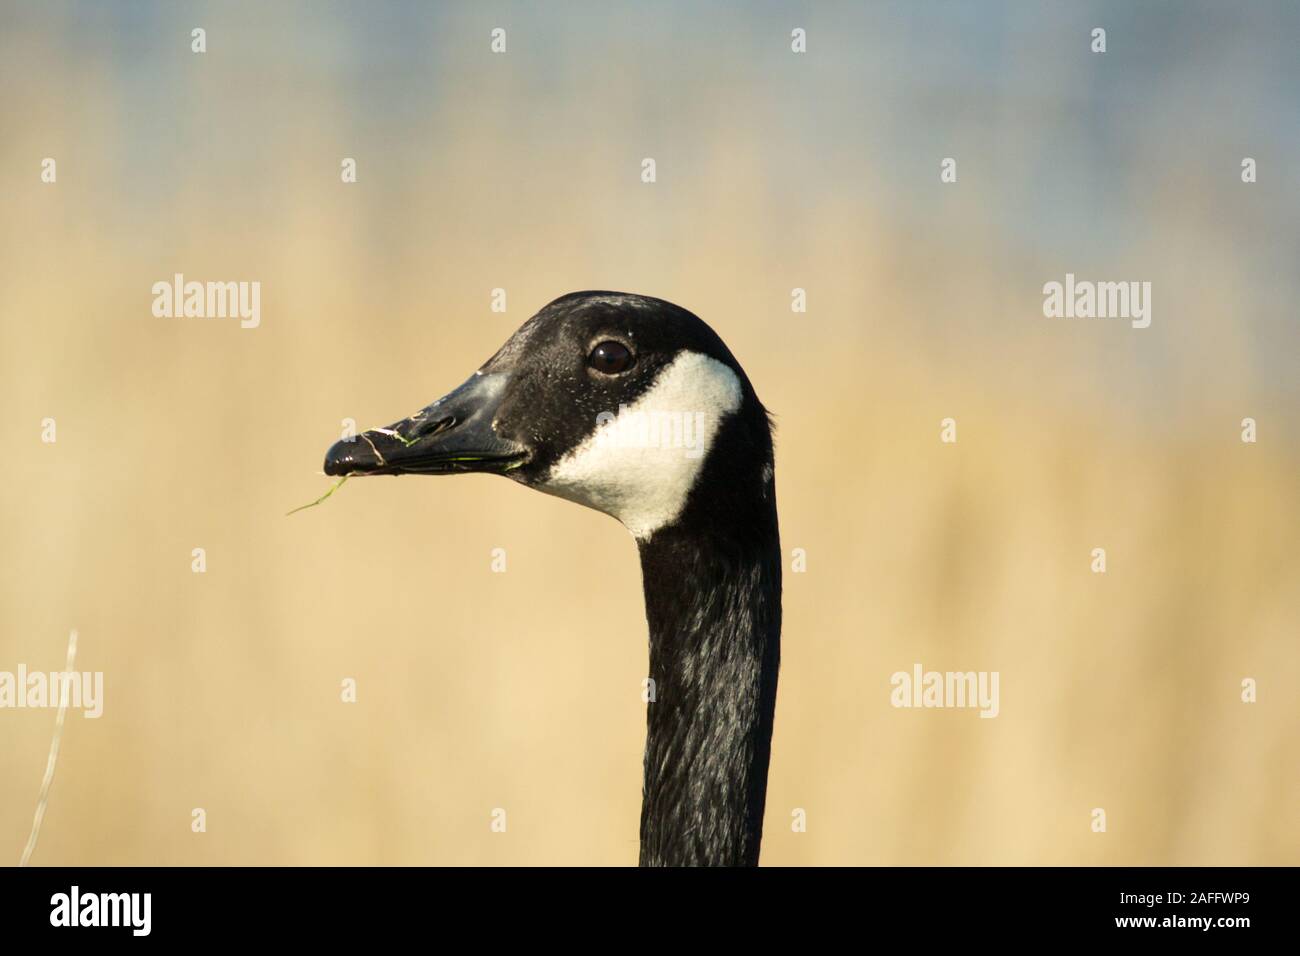 Canada Goose (Branta canadensis) della testa e del collo di profilo sulla giornata autunnale. Mostra distintivo faccia nera con il bianco dal sottogola. Erba nel becco. Foto Stock